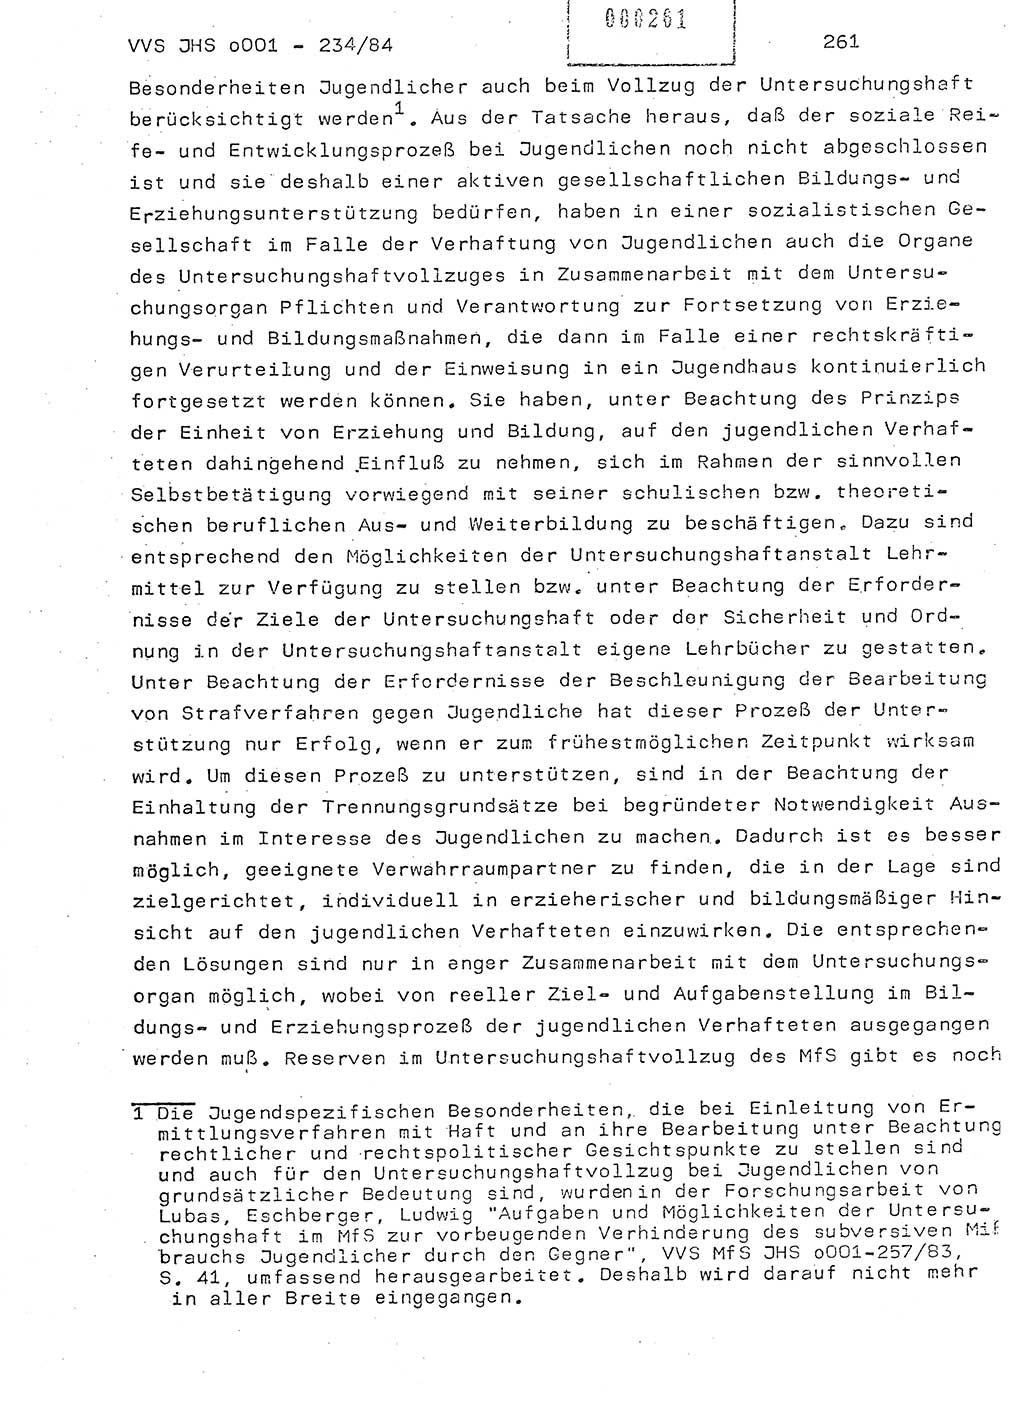 Dissertation Oberst Siegfried Rataizick (Abt. ⅩⅣ), Oberstleutnant Volkmar Heinz (Abt. ⅩⅣ), Oberstleutnant Werner Stein (HA Ⅸ), Hauptmann Heinz Conrad (JHS), Ministerium für Staatssicherheit (MfS) [Deutsche Demokratische Republik (DDR)], Juristische Hochschule (JHS), Vertrauliche Verschlußsache (VVS) o001-234/84, Potsdam 1984, Seite 261 (Diss. MfS DDR JHS VVS o001-234/84 1984, S. 261)